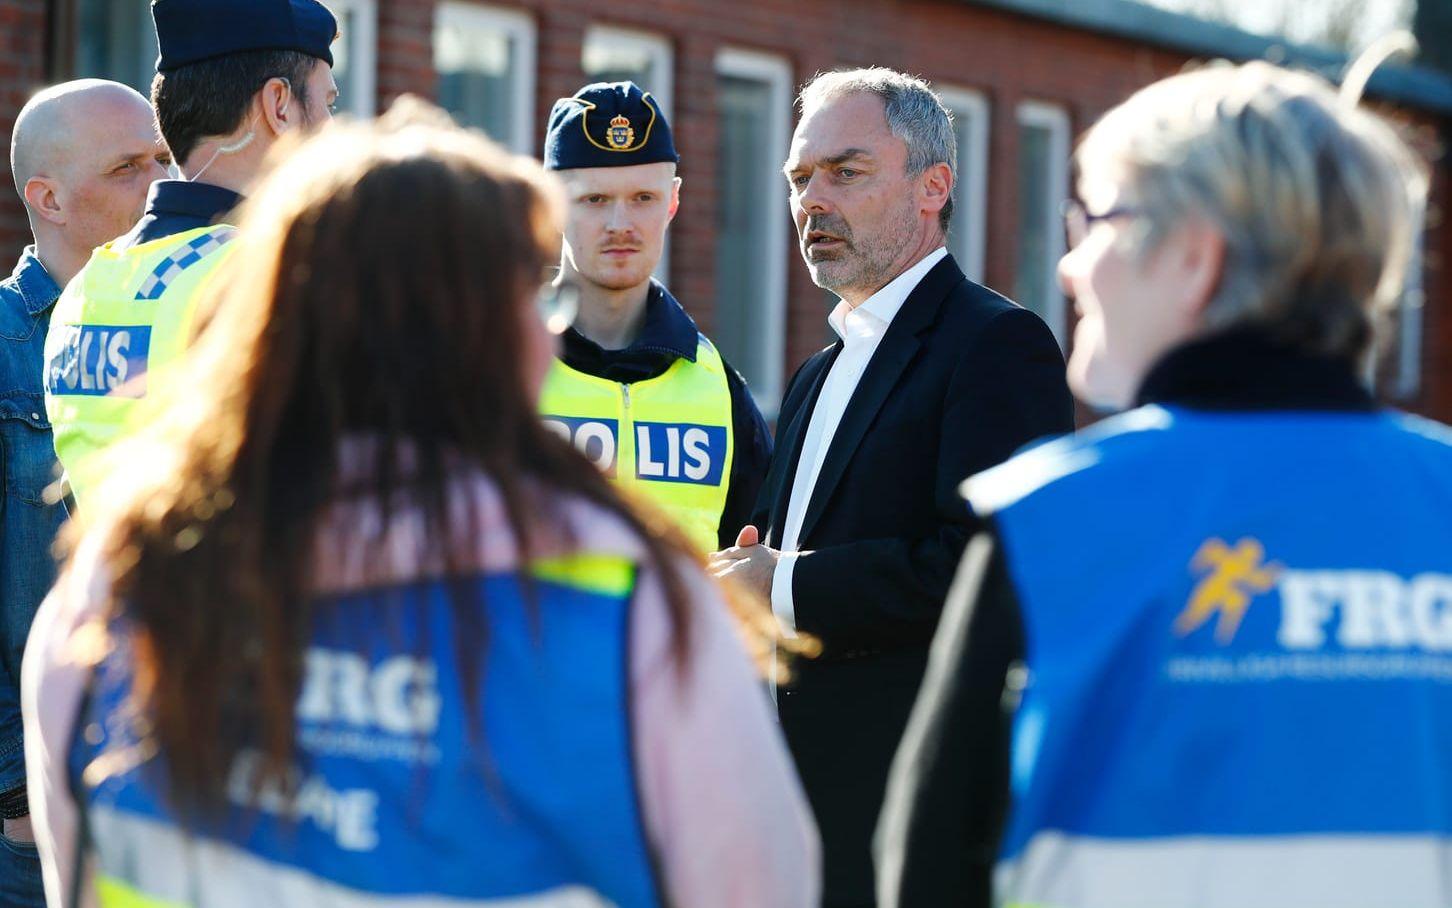 Liberalernas partiledare Jan Björklund kom till Ängskolan i Skene där han själv gick i högstaidet för att visa sitt medlidande dagen efter tragedin. Bild: TT